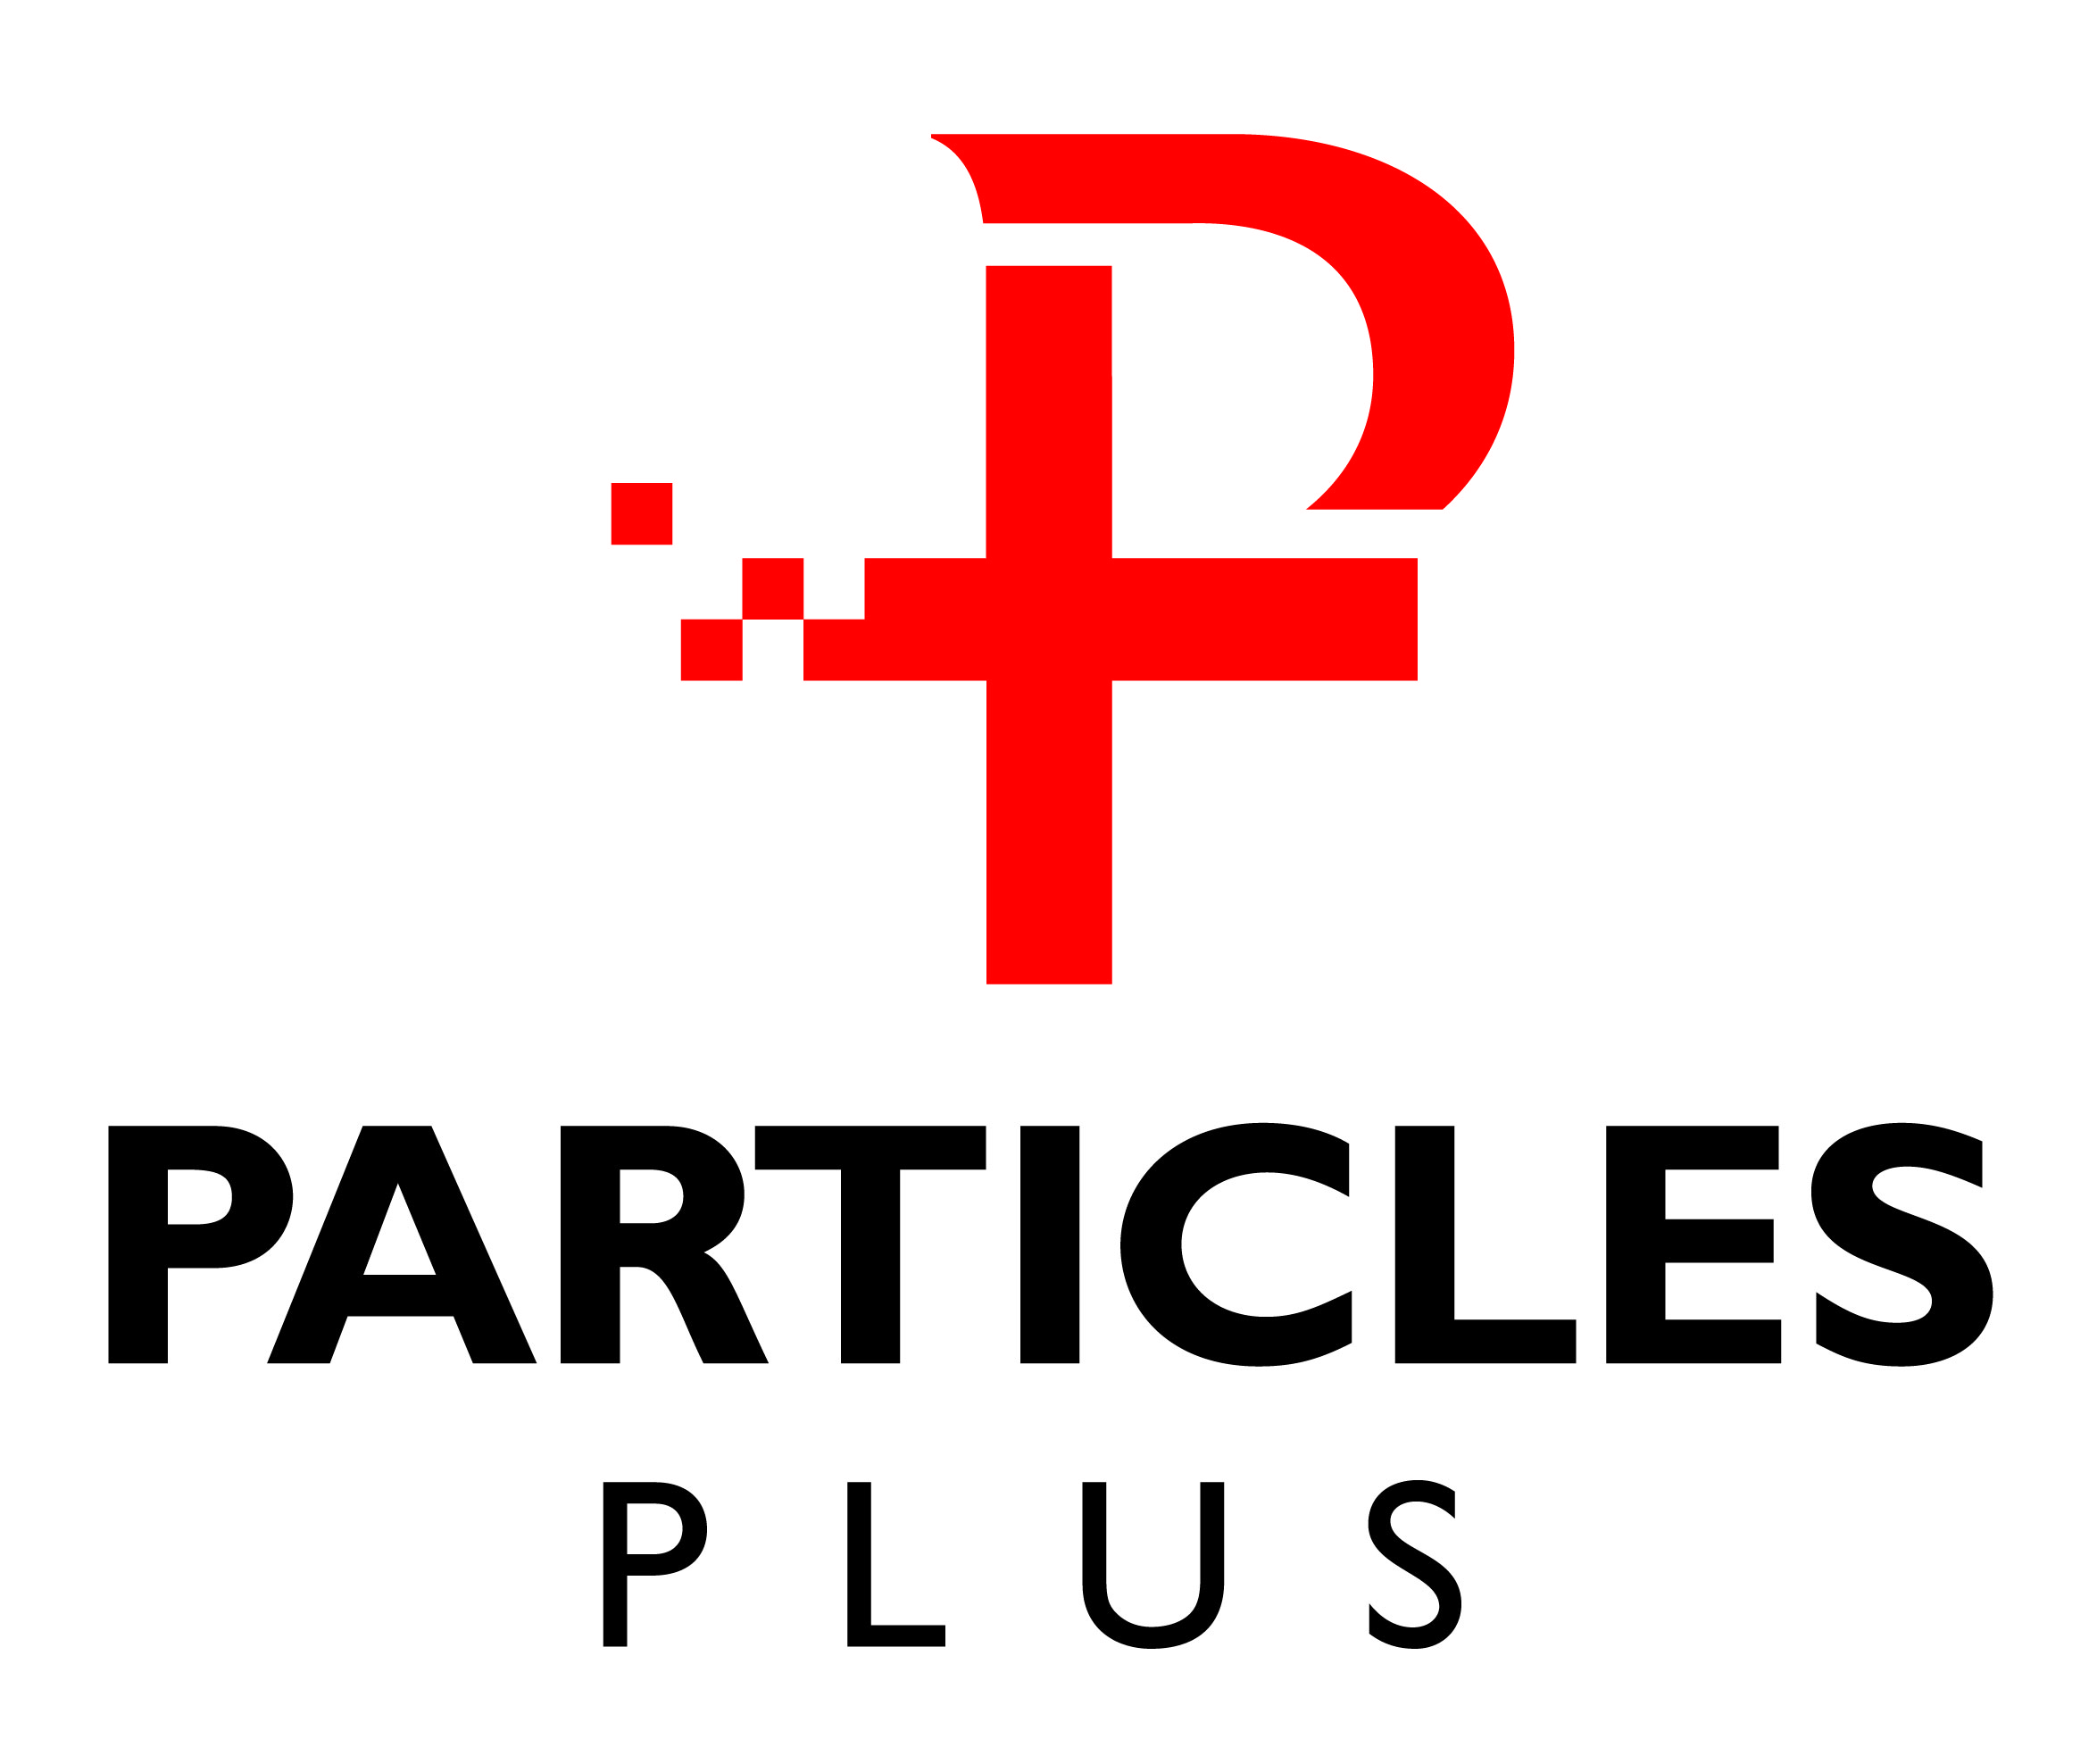 Particles plus